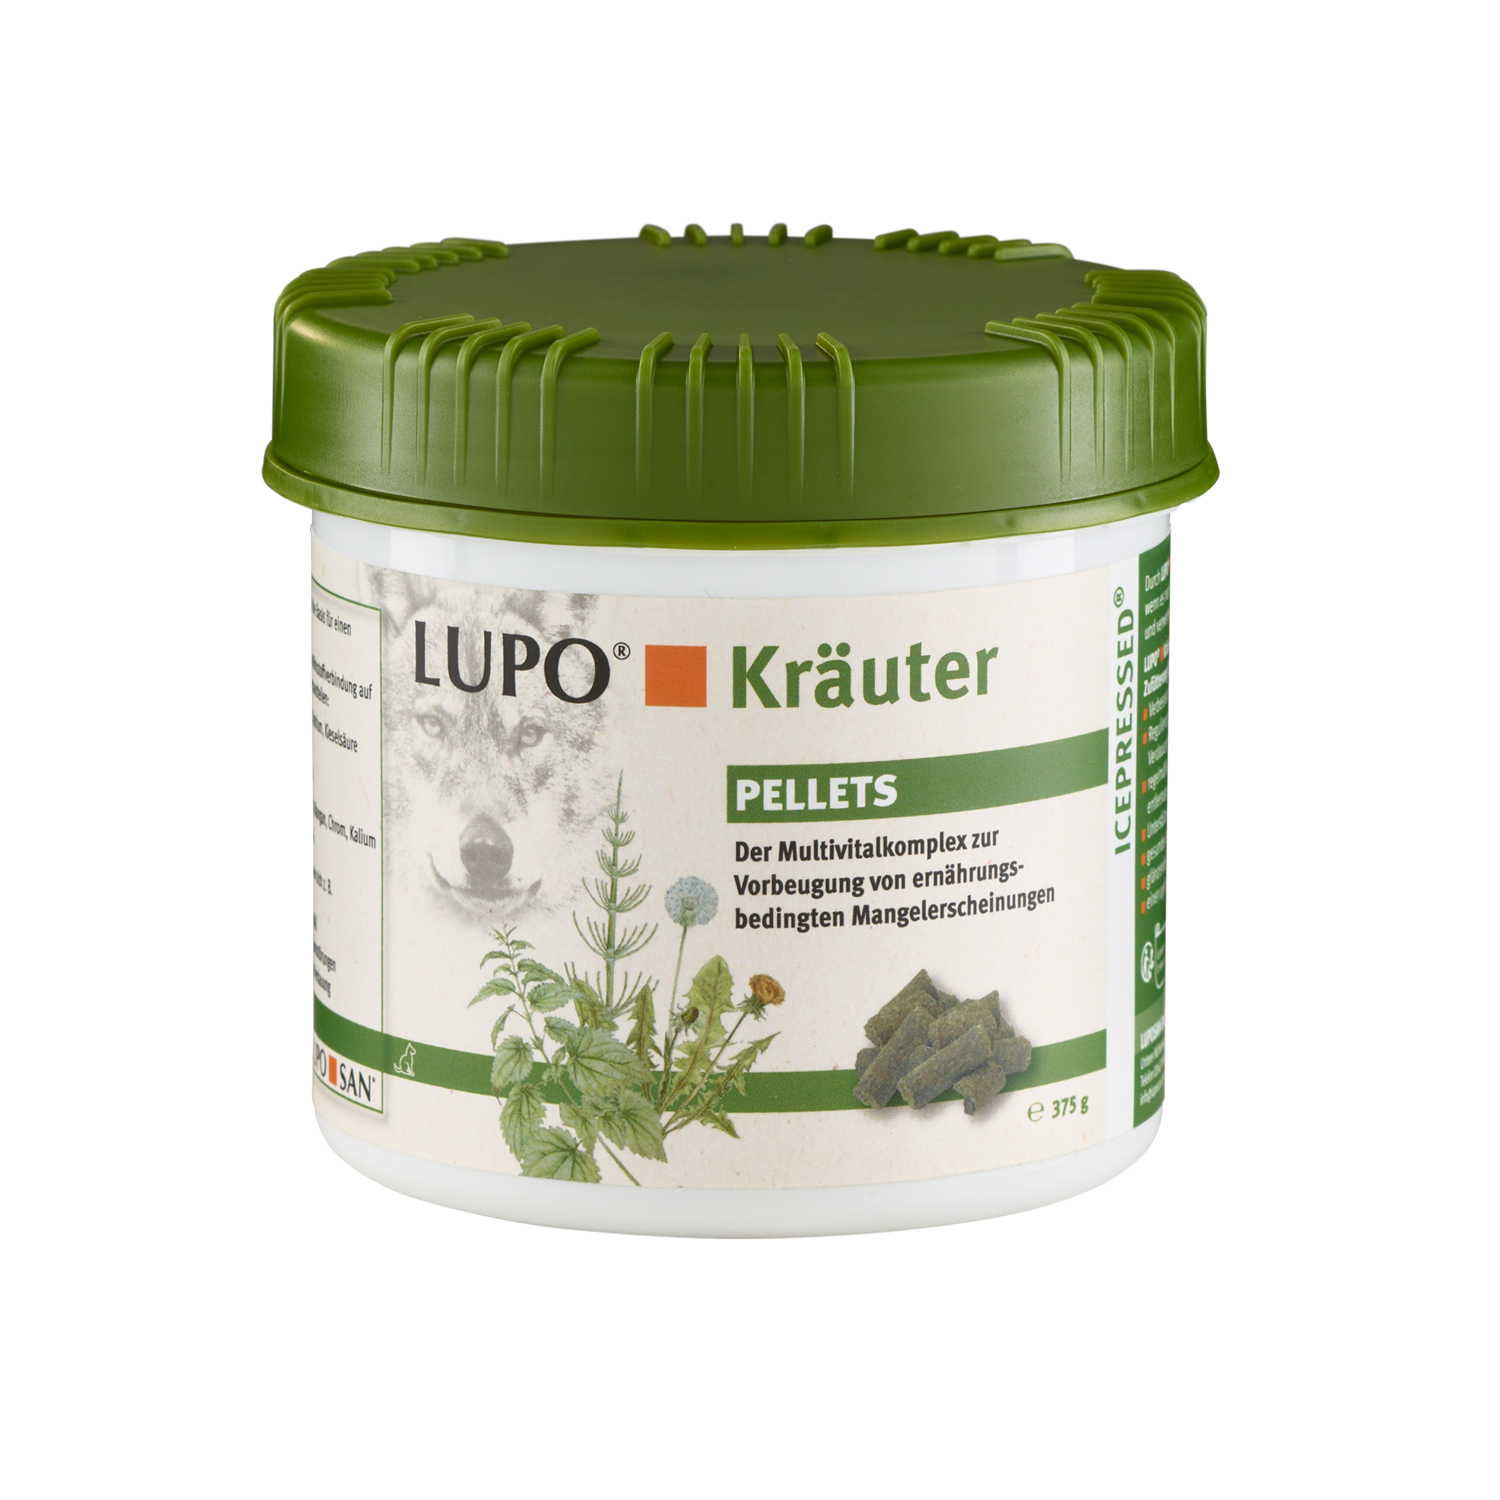 LUPO Kräuter Pellets 375 g